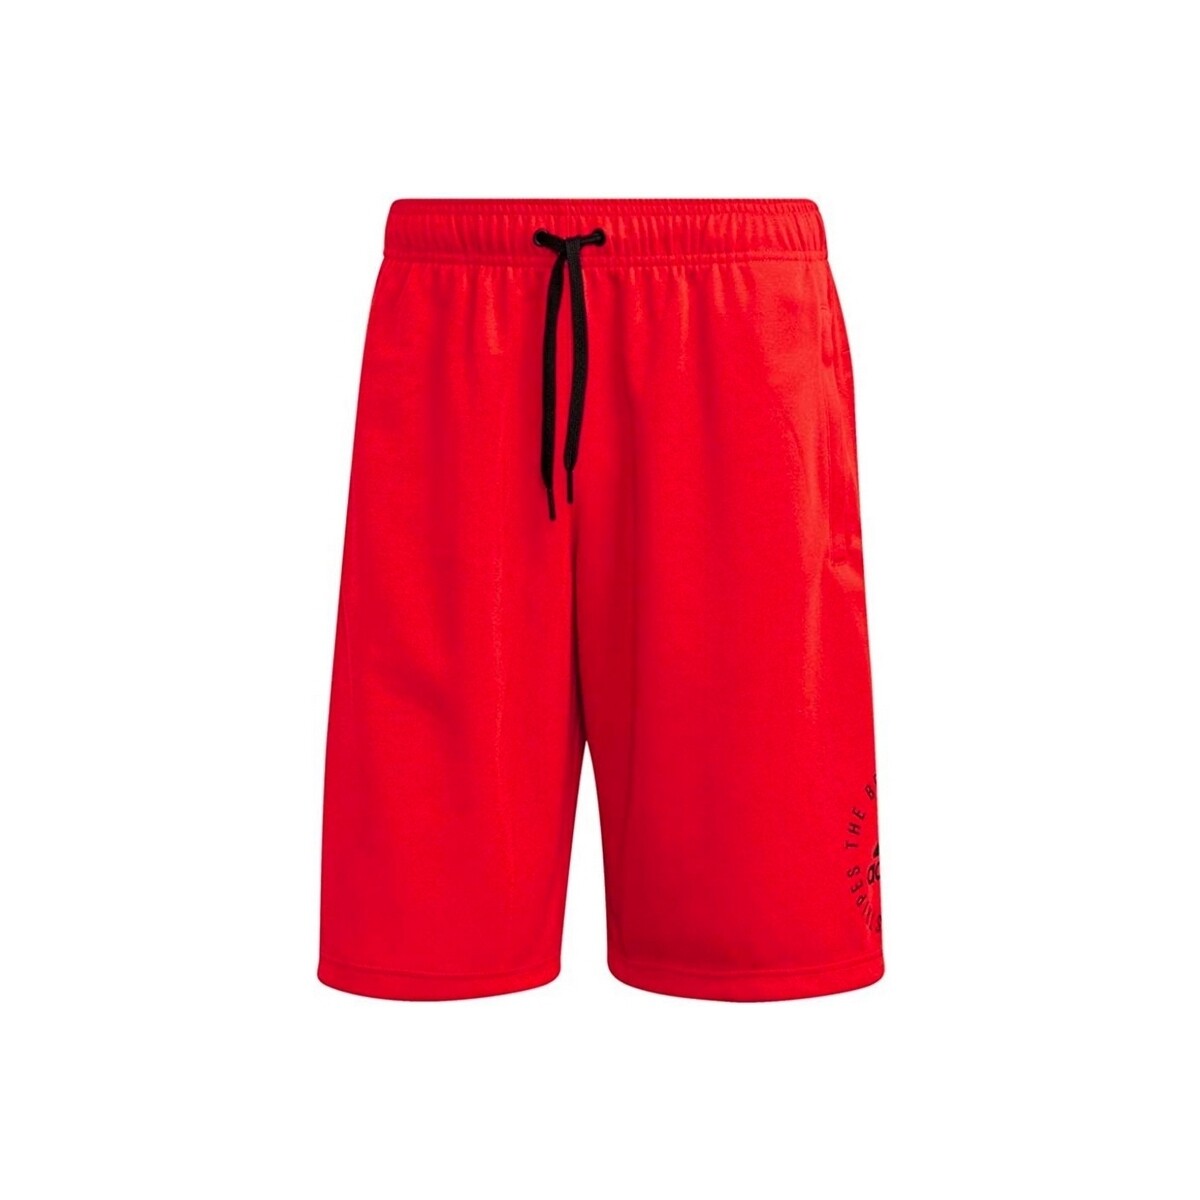 Vêtements Homme Shorts / Bermudas adidas Originals DQ1474 Rouge